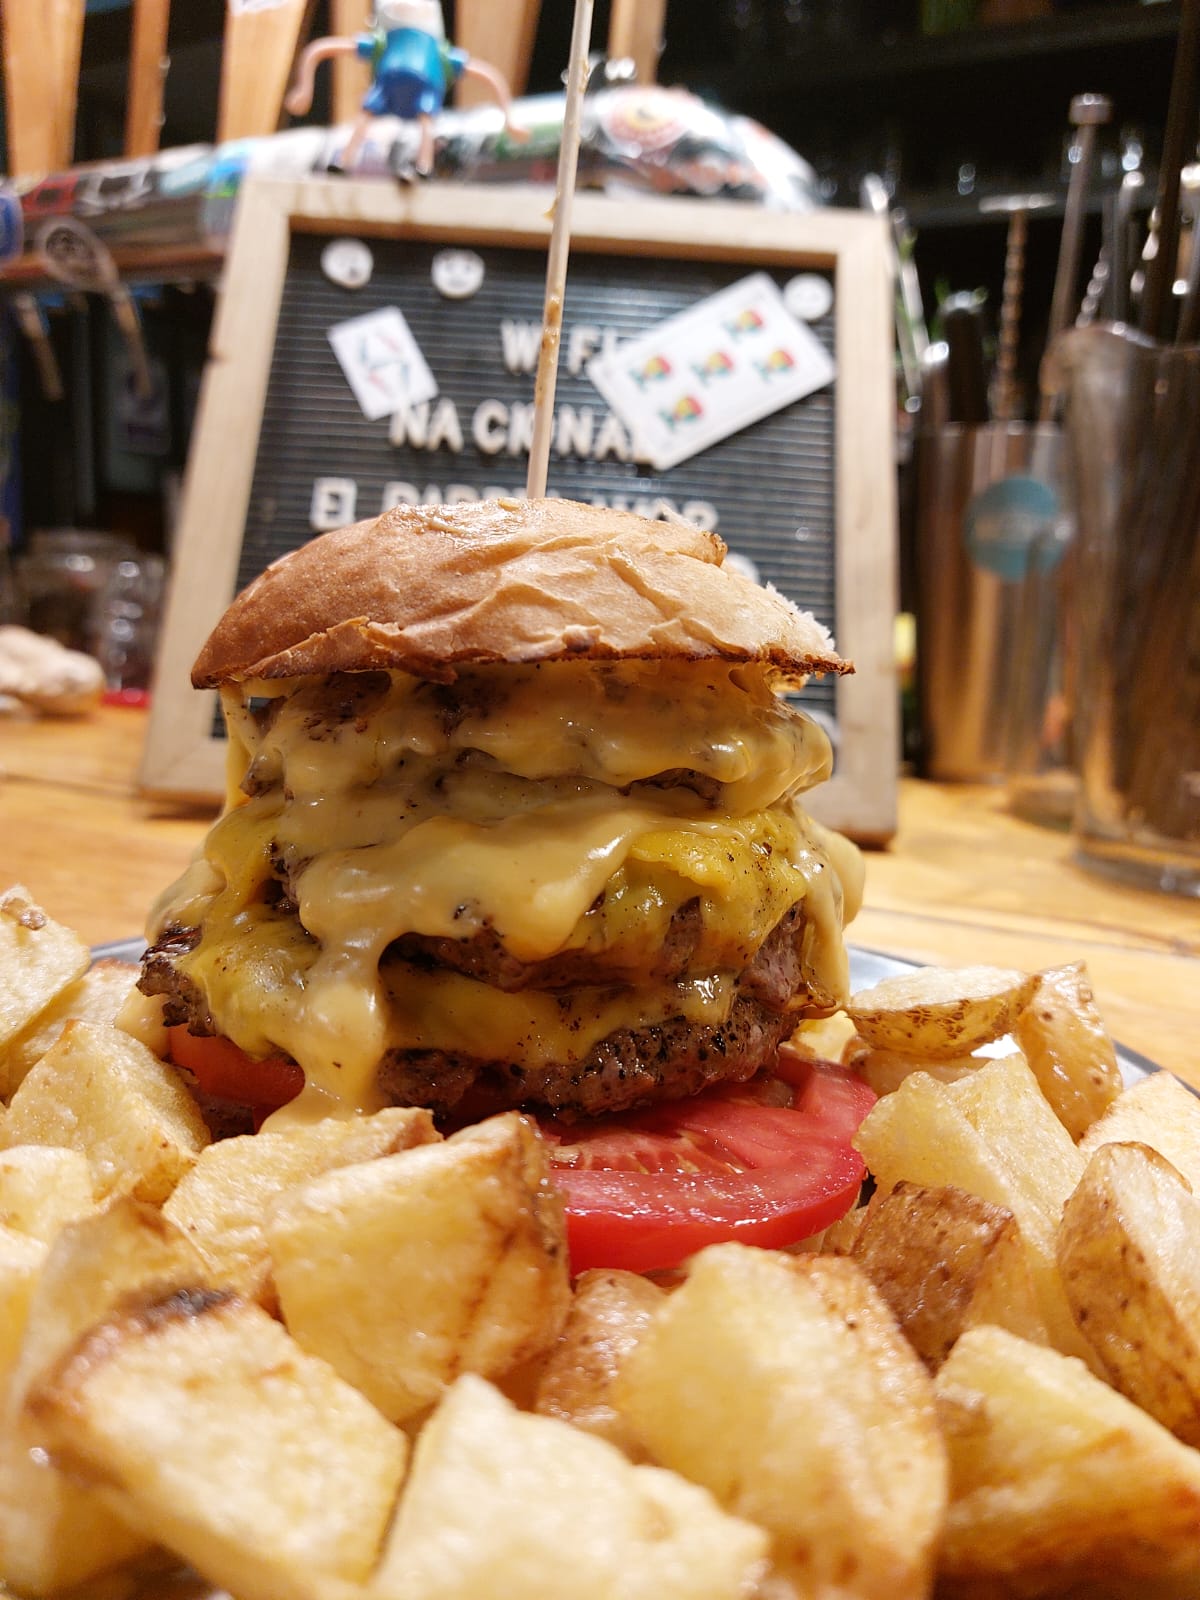 La hamburguesa Dibu es una de las estrellas de la casa en honor a la pasión por la Scaloneta (Instagram @nacional.bar)